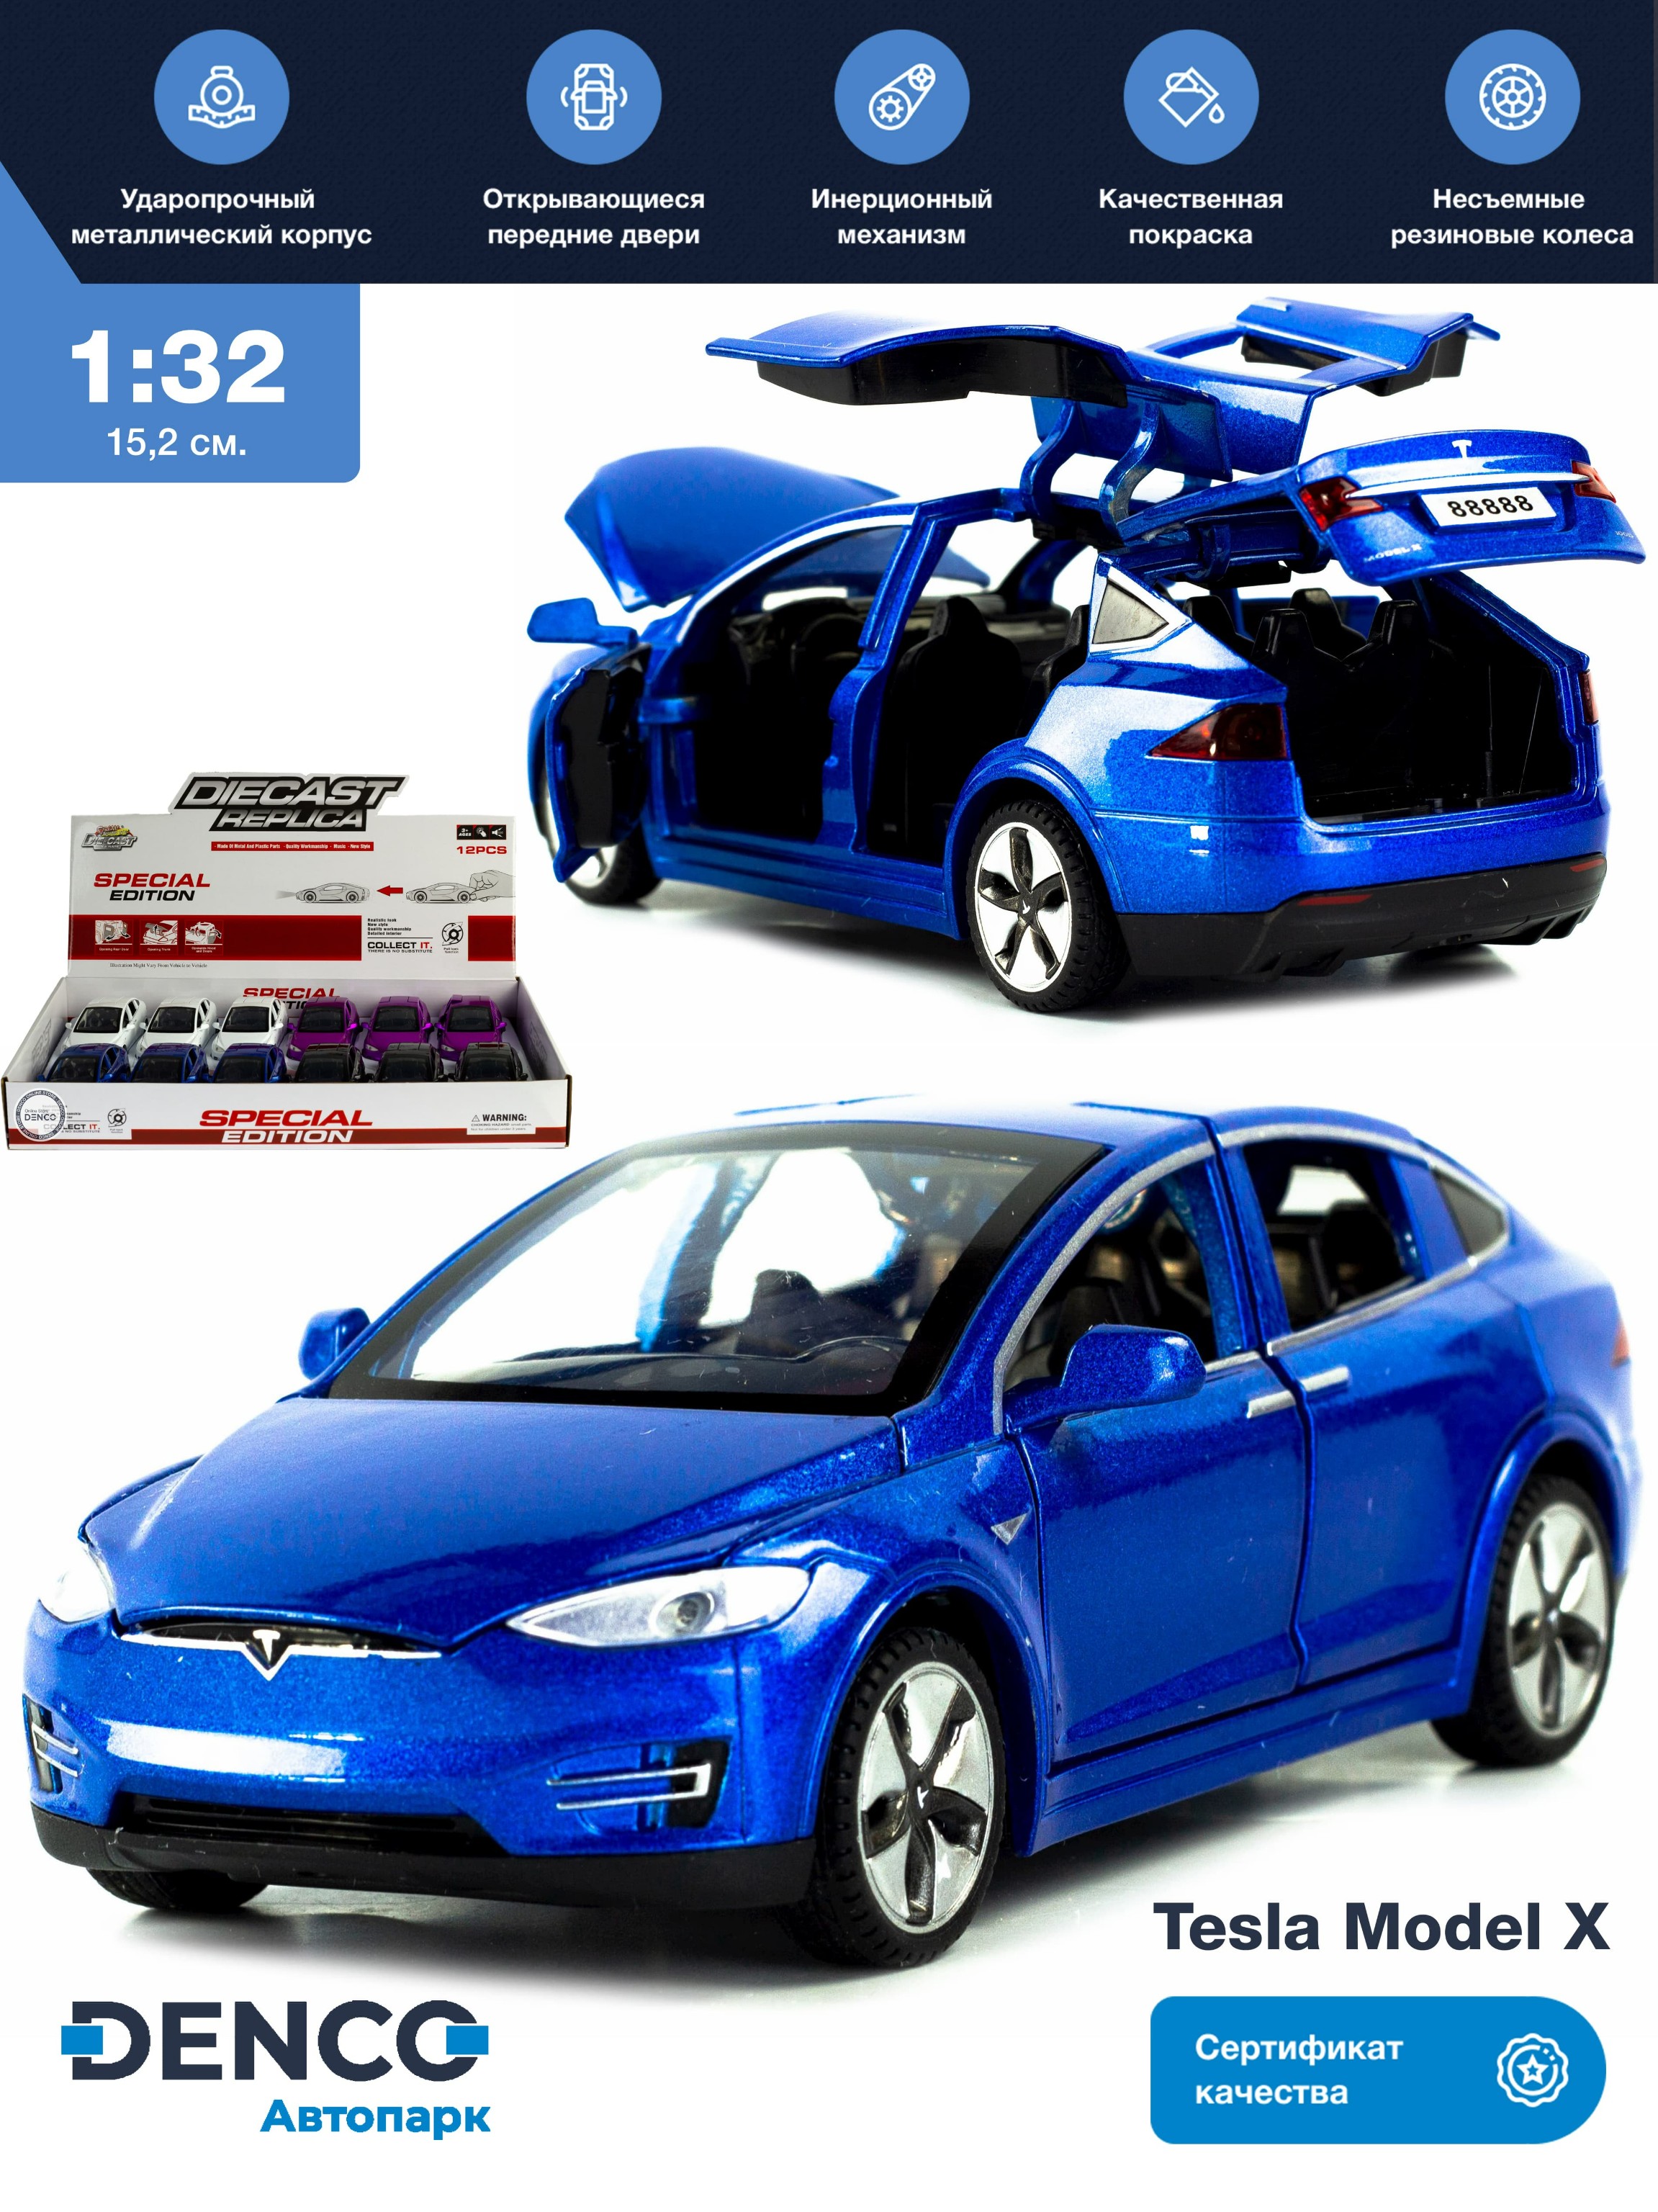 Металлическая машинка Wanbao 1:32 «Tesla Model X» 636D инерционная, свет, звук / Синий